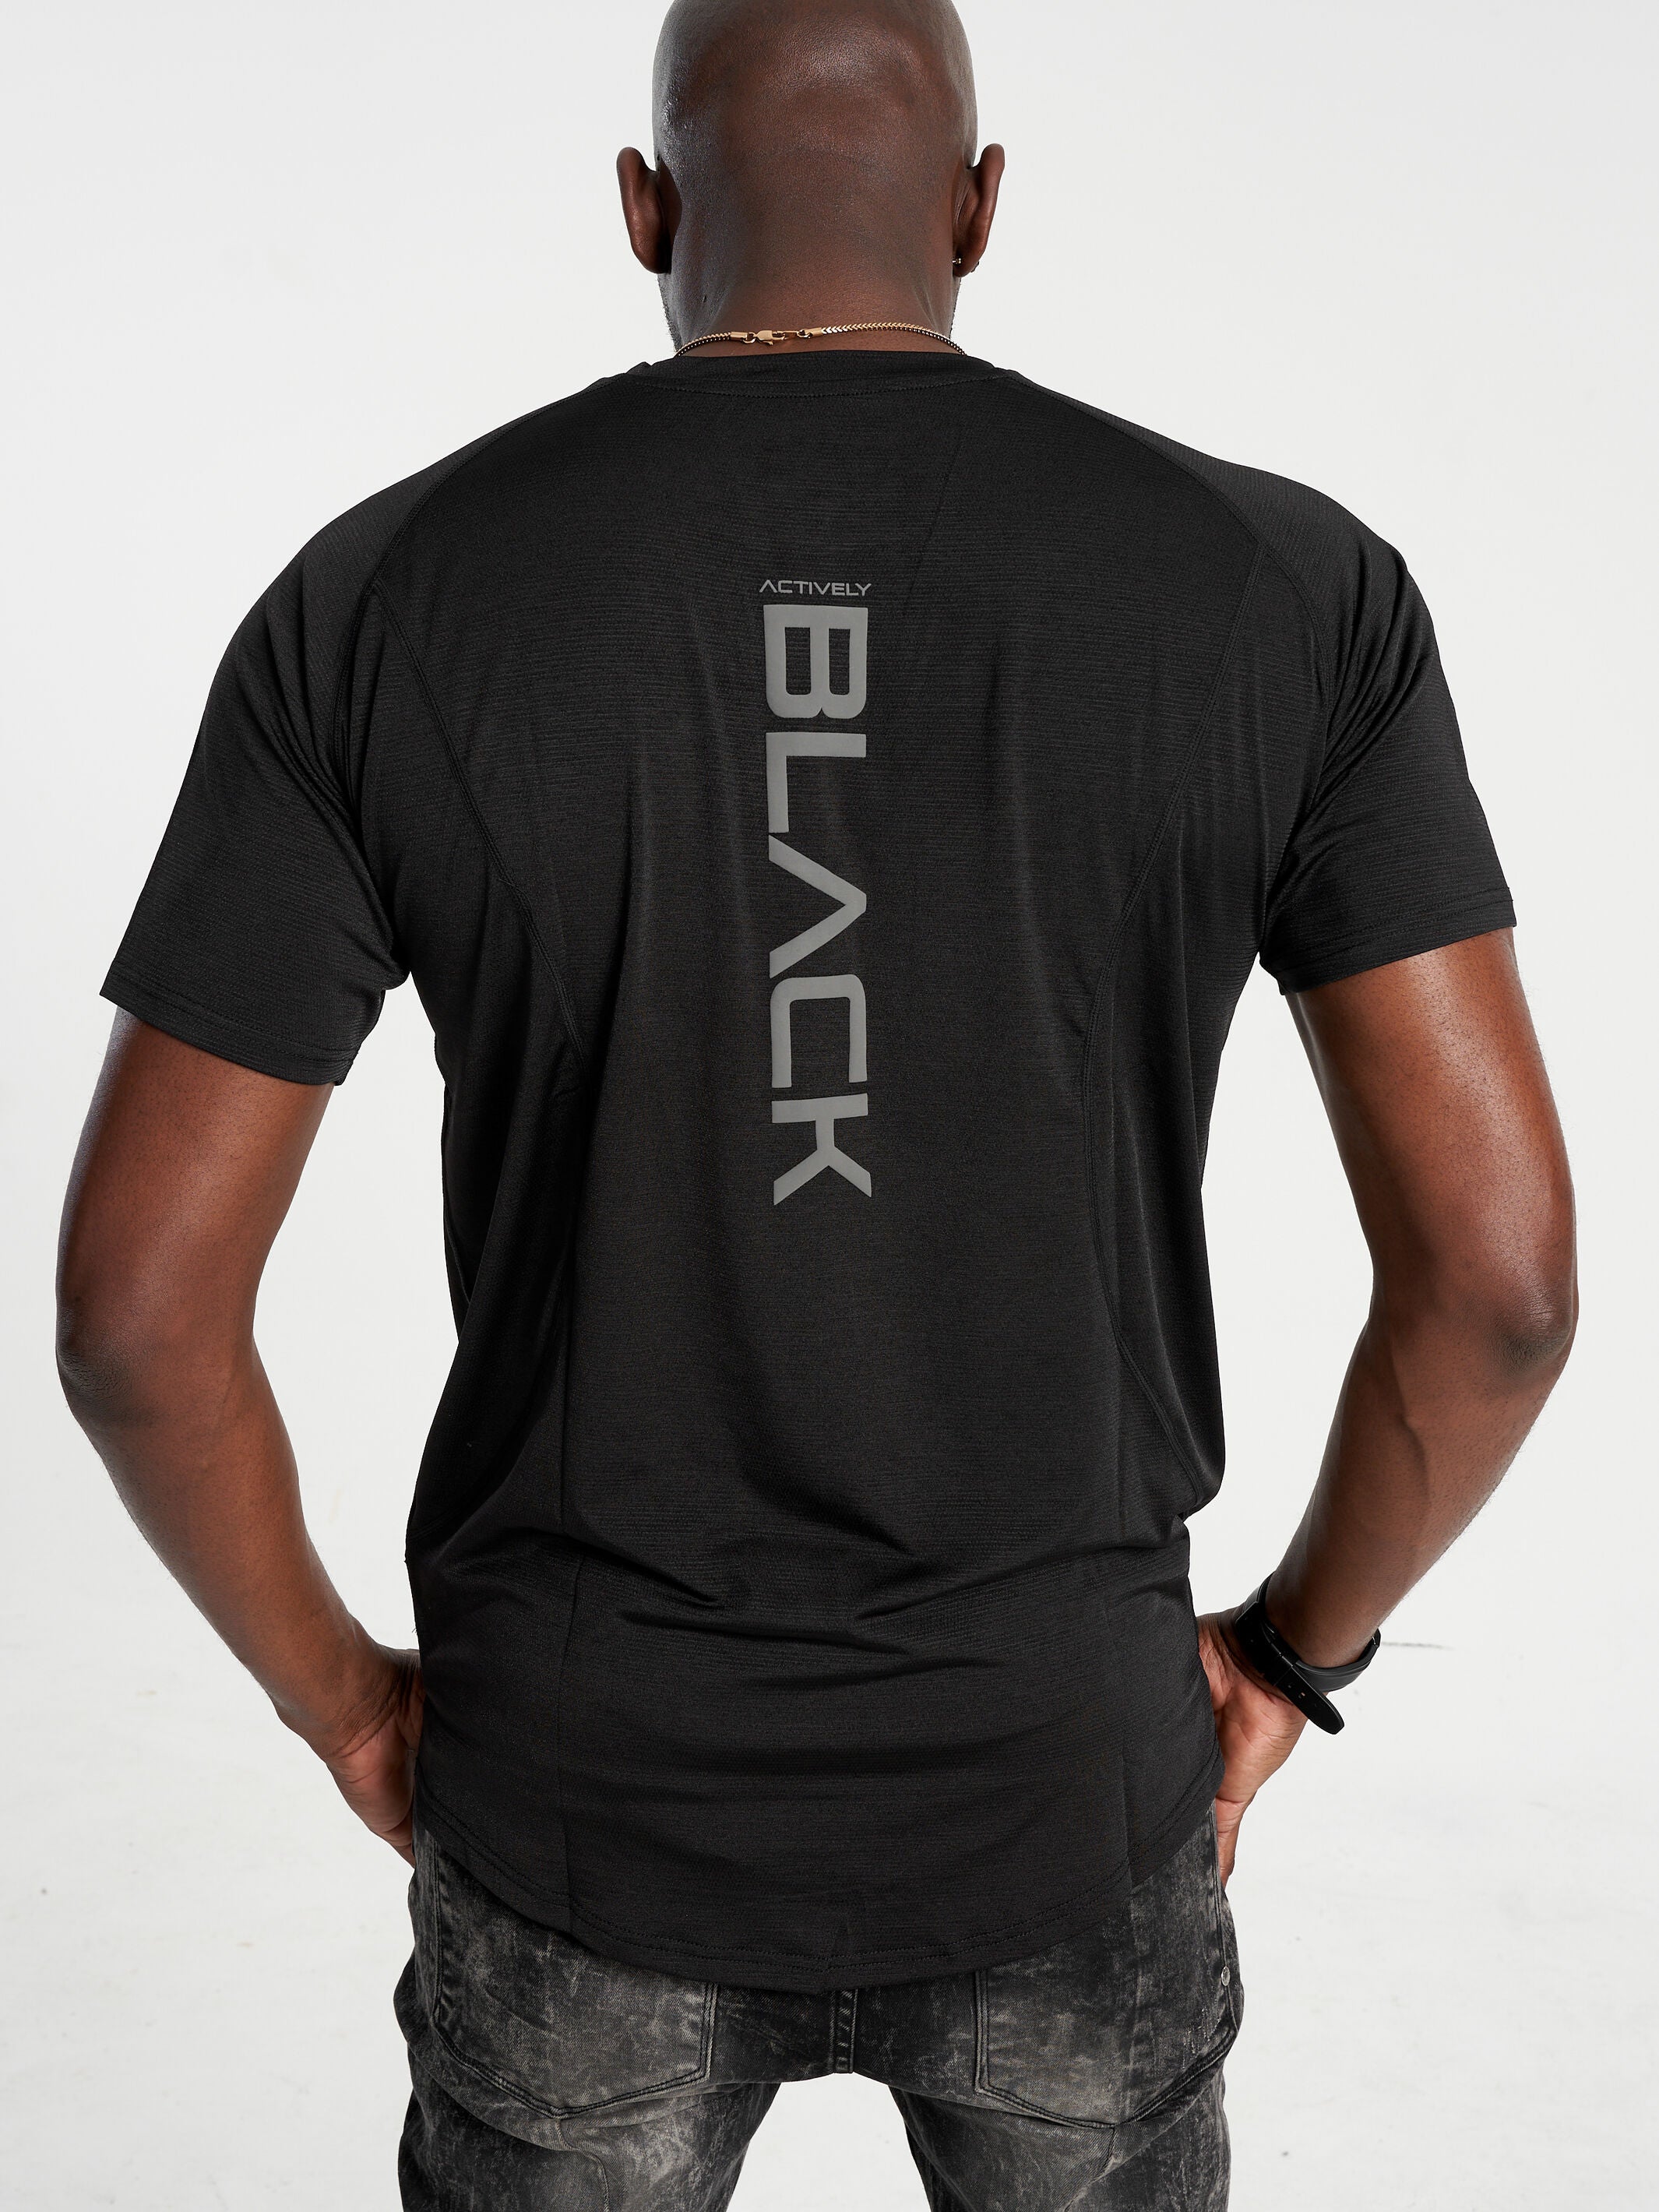 Unisex Actively Black 365 Performance Shirt